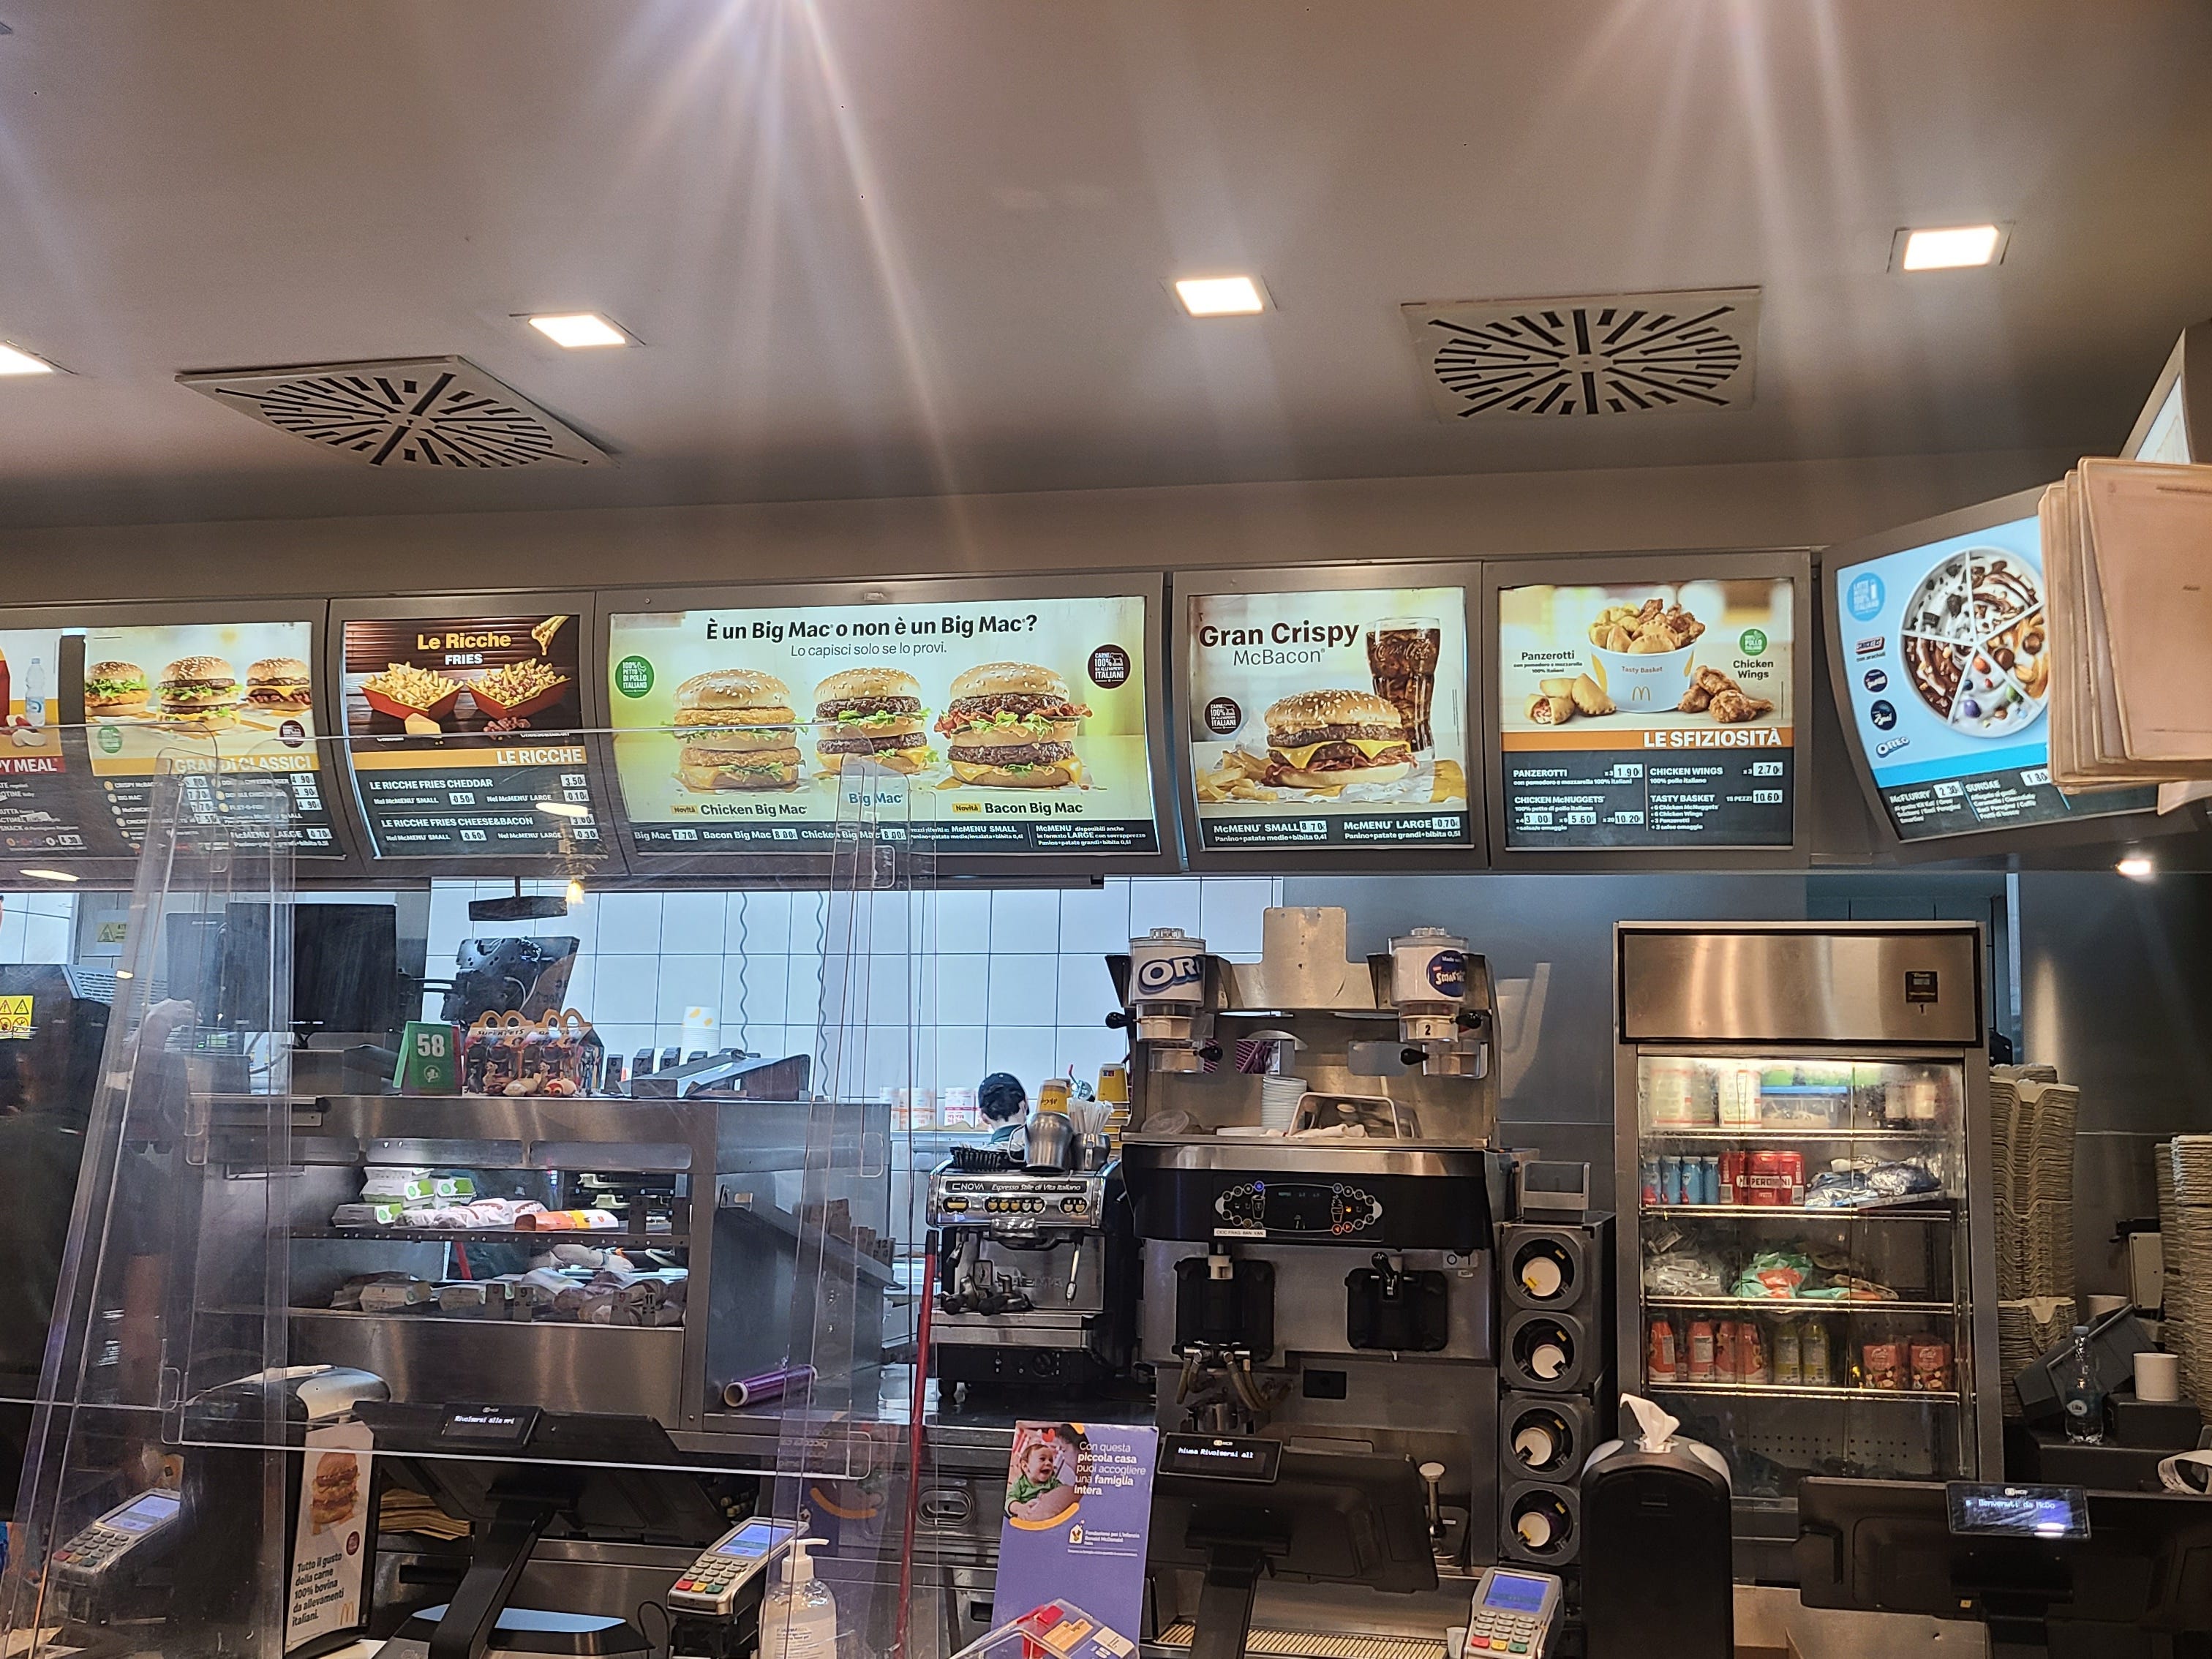 Aufnahme des Menü- und Kassenbereichs bei einem italienischen McDonalds